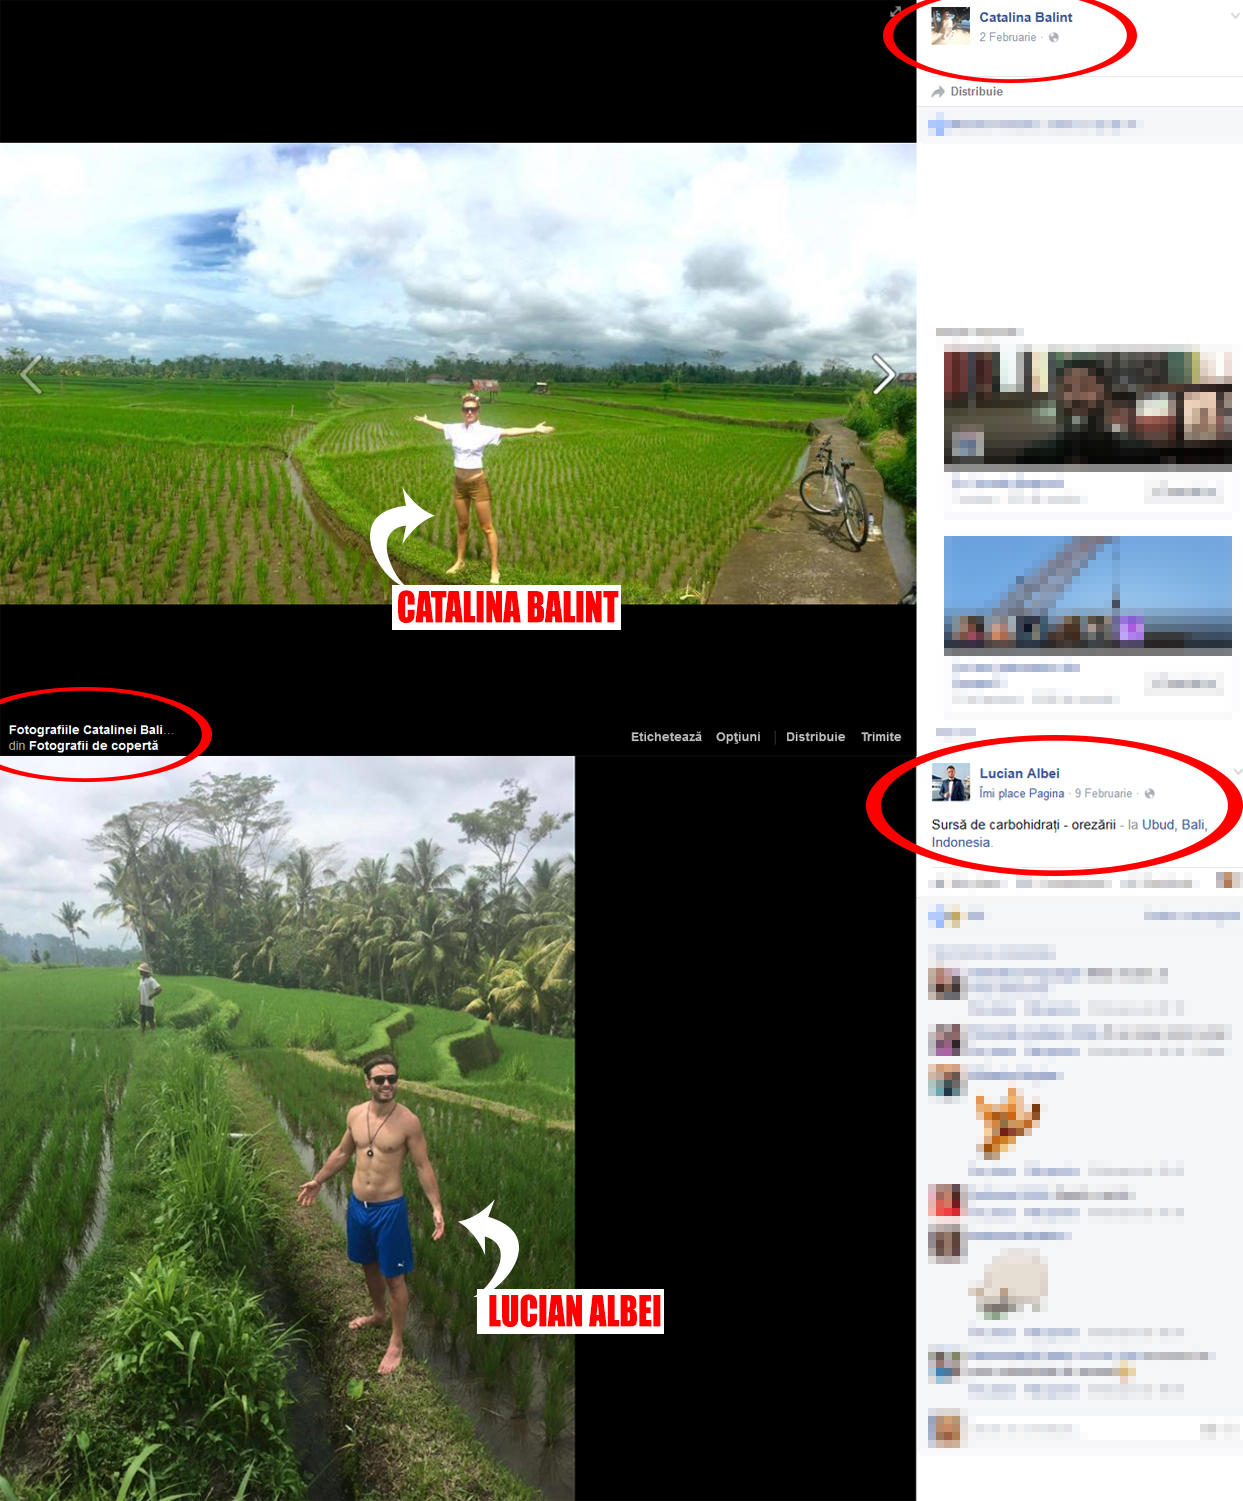 La începutul lunii februarie, Cătălina şi Lucian au postat separat, pe conturile lor de Facebook, fotografii similare dintr-o orezărie din Bali